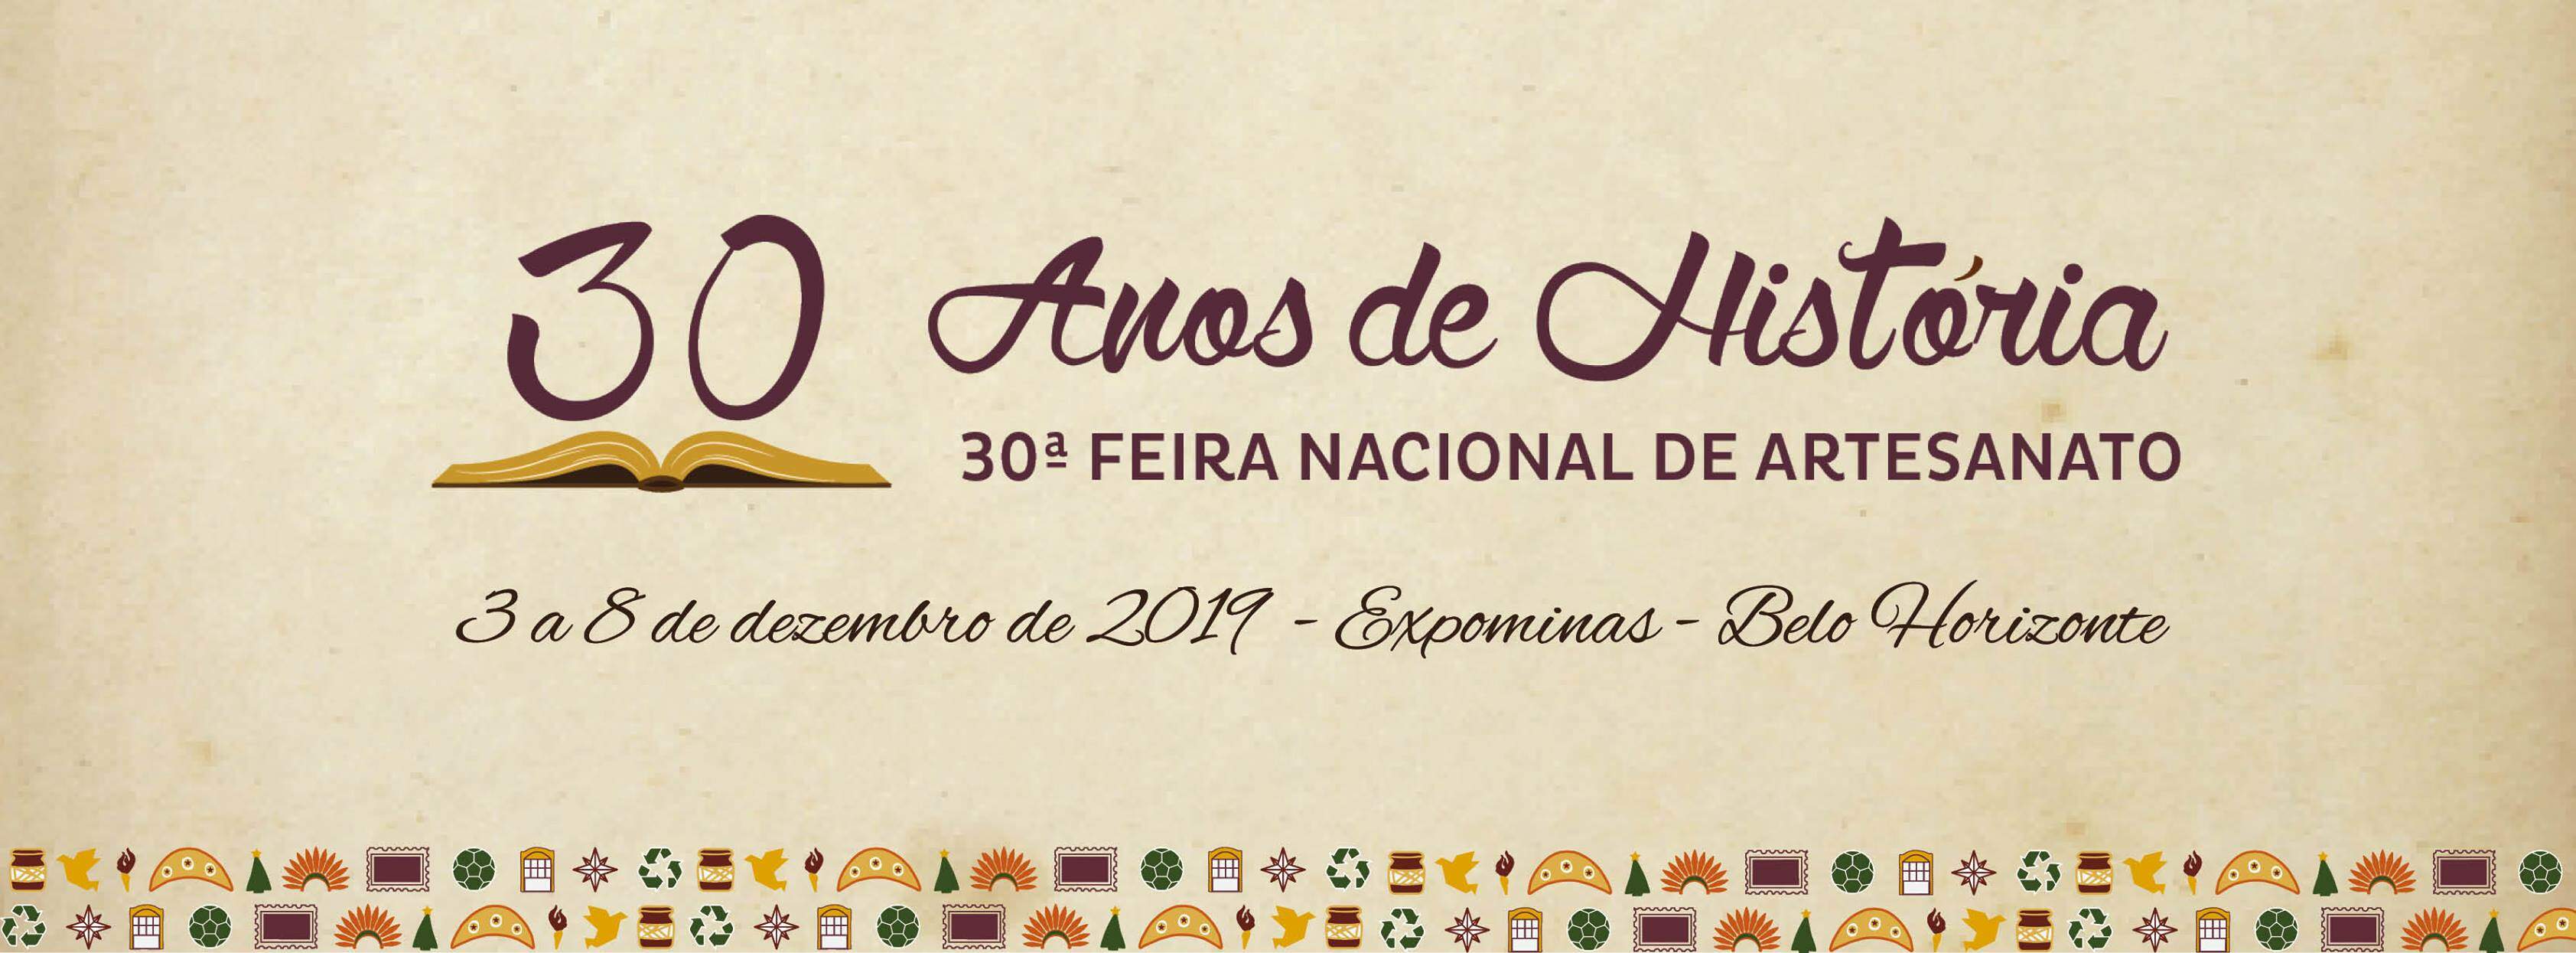 30ª Feira Nacional de Artesanato - 30 Anos de História